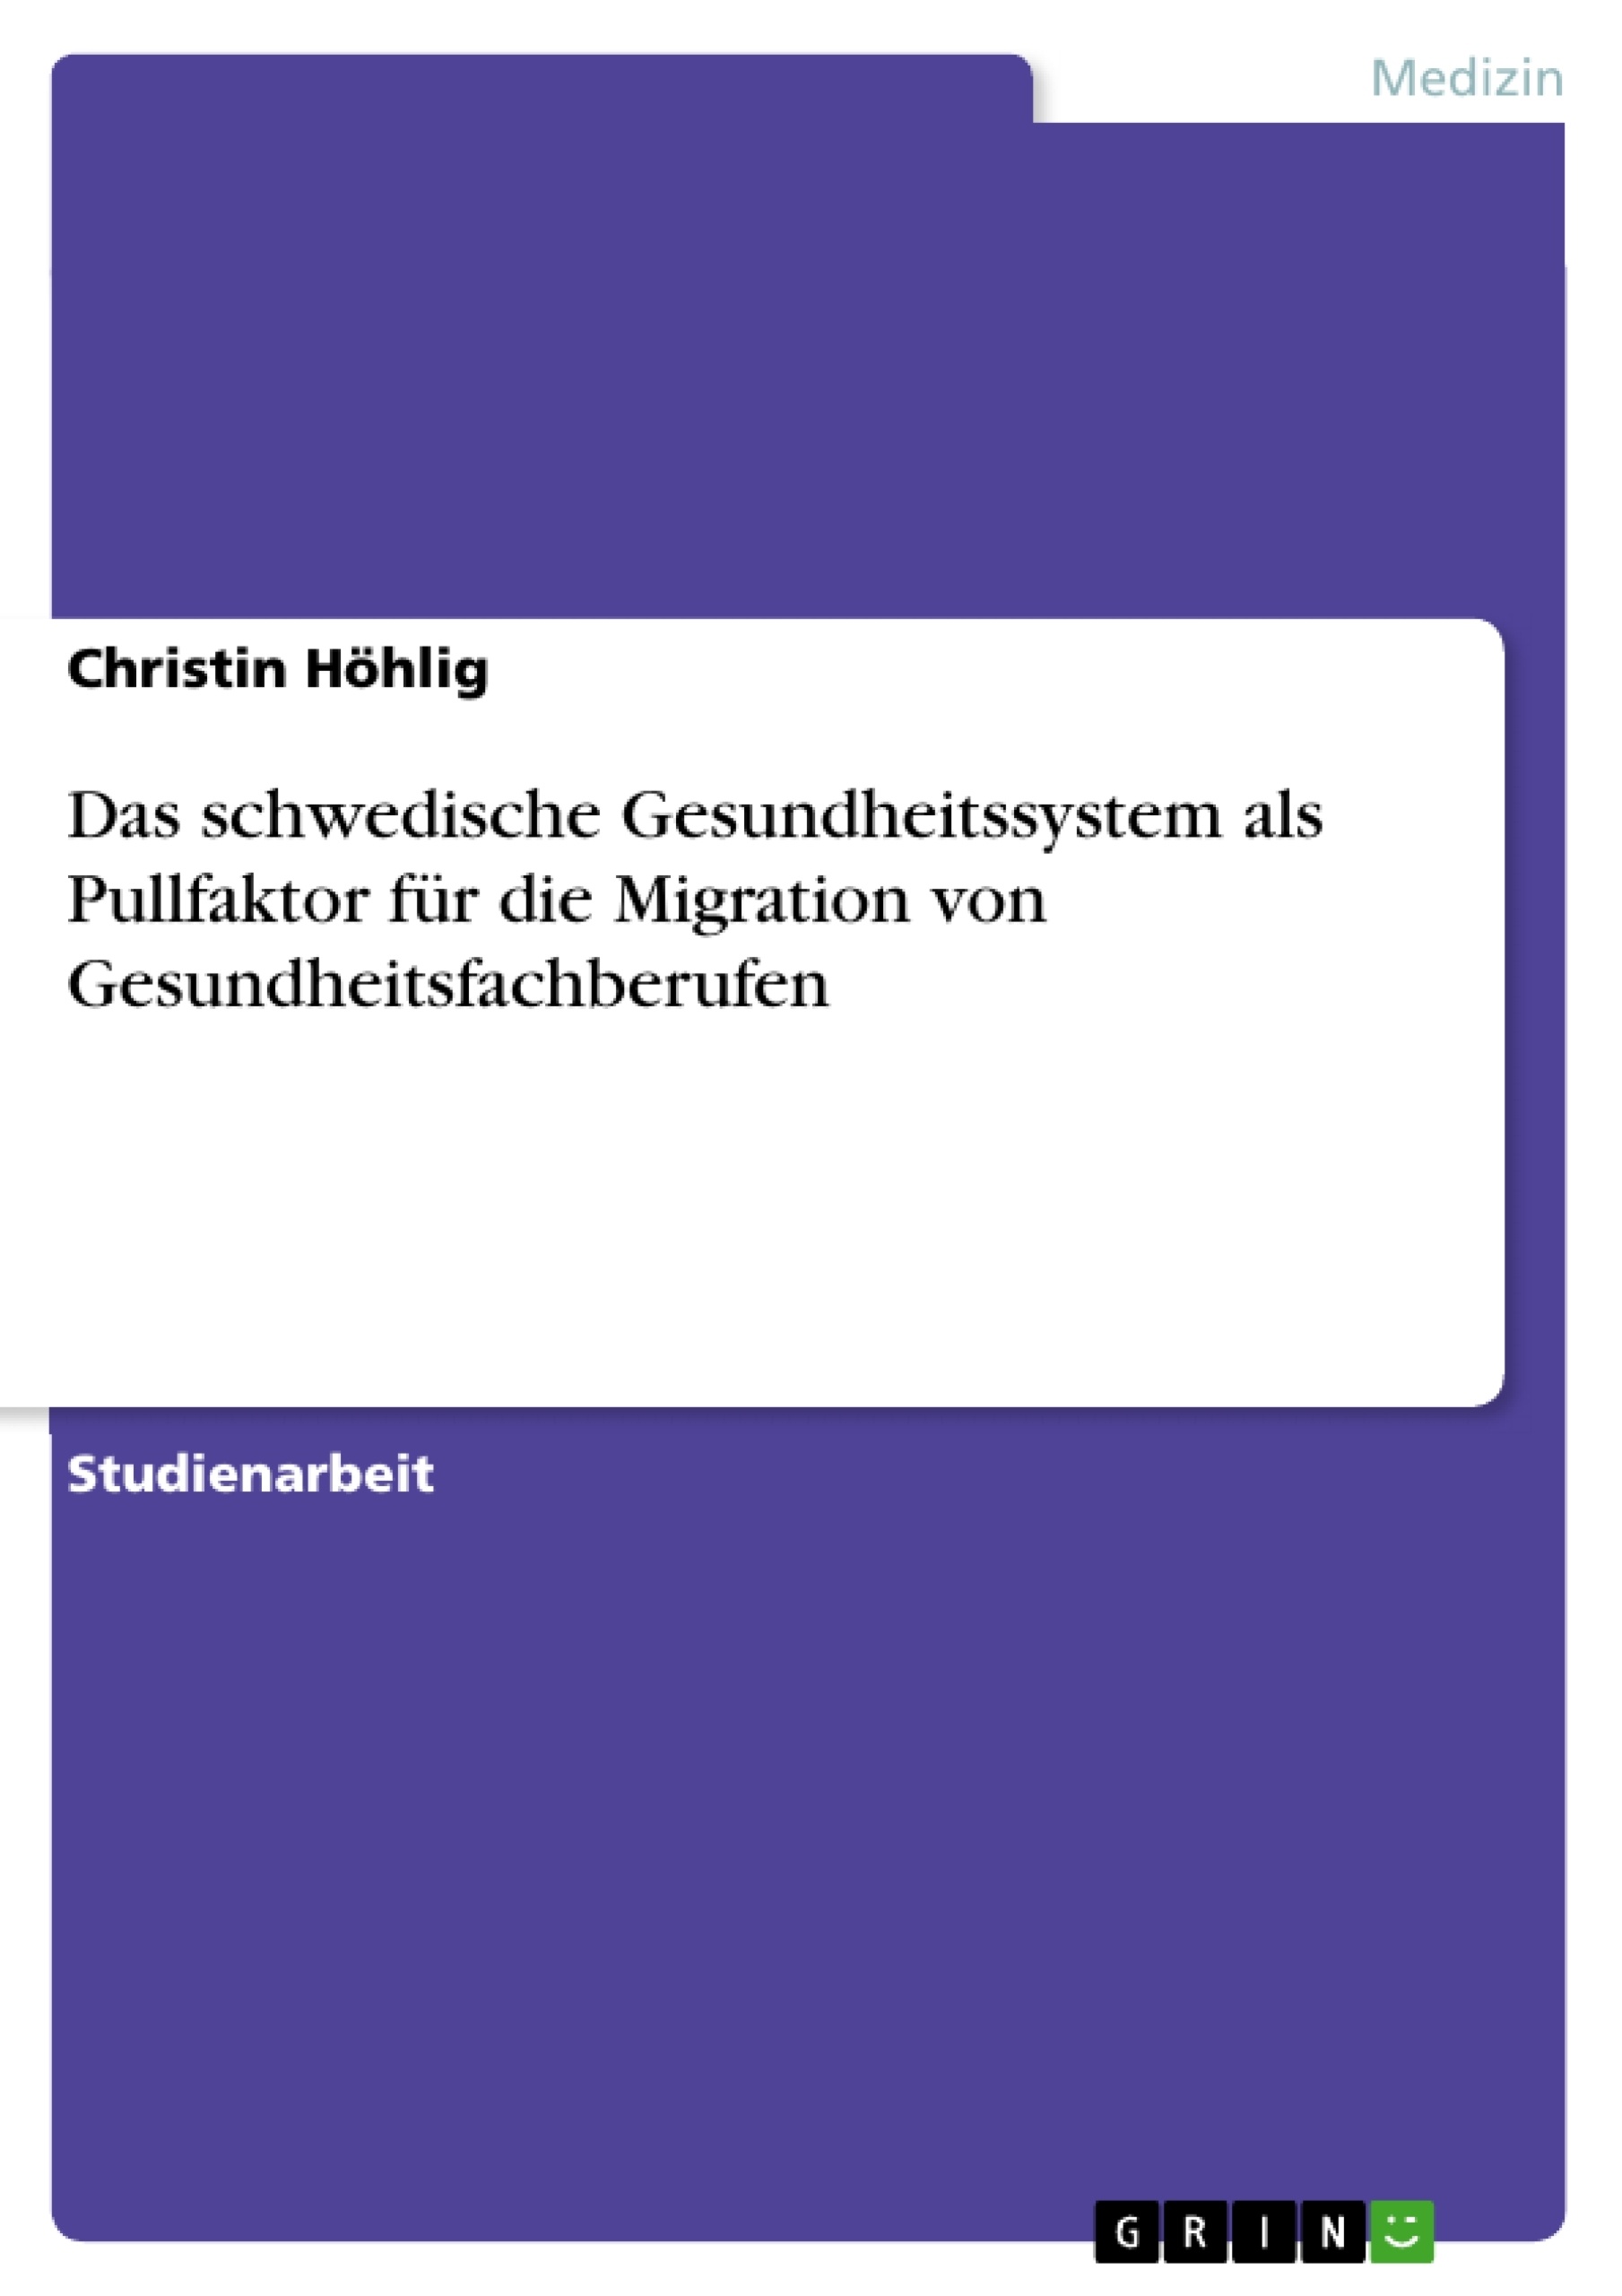 Título: Das schwedische Gesundheitssystem als Pullfaktor für die Migration von Gesundheitsfachberufen